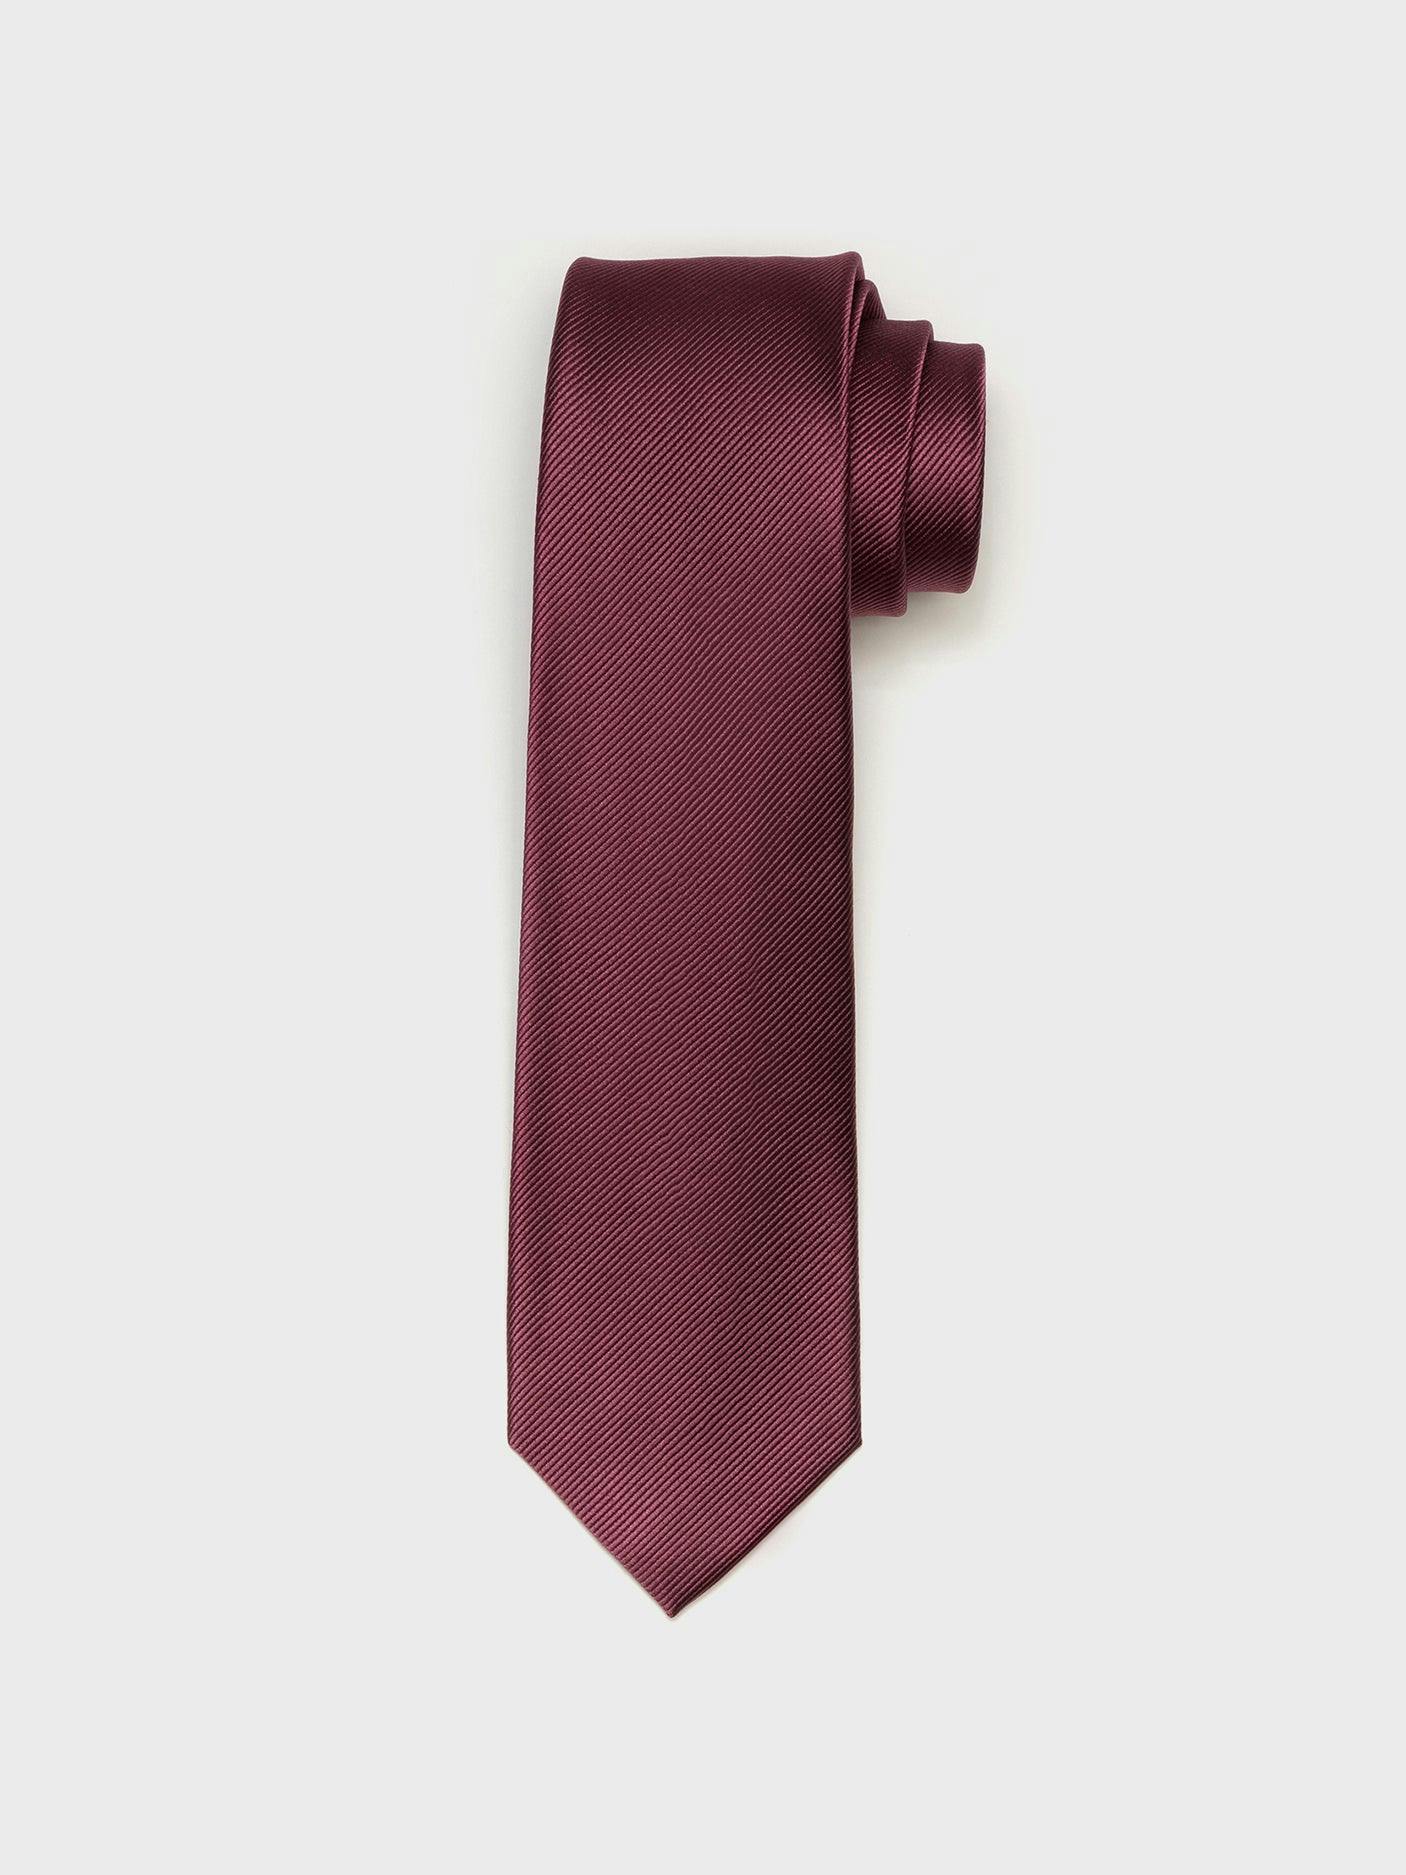 Chianti Silk Necktie